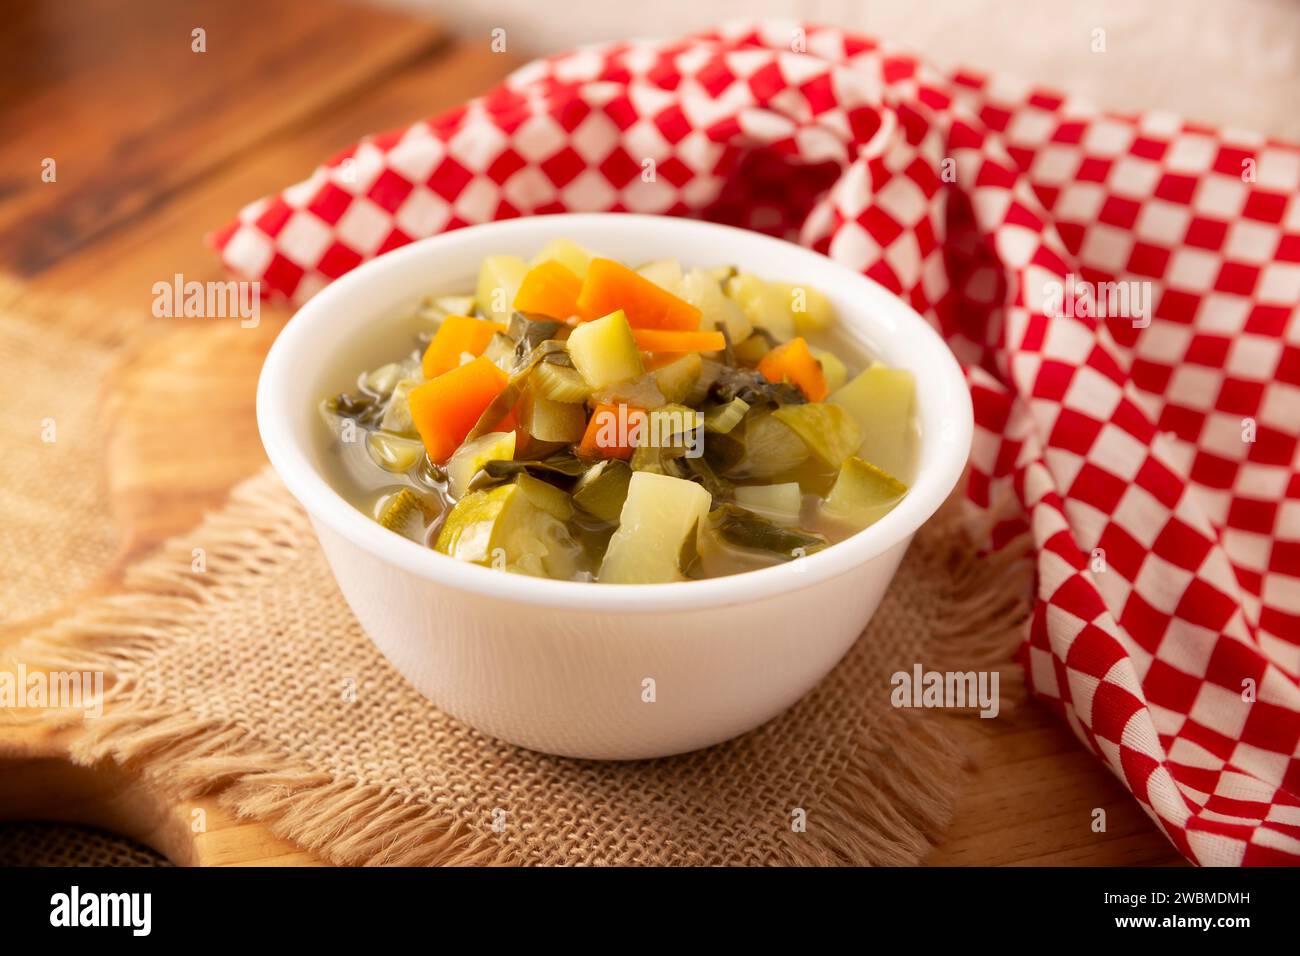 Zuppa di verdure fresca fatta in casa, ricetta semplice con verdure tritate, carota, sedano, zucca, spinaci, chayote e altri ingredienti, piatto sano Foto Stock